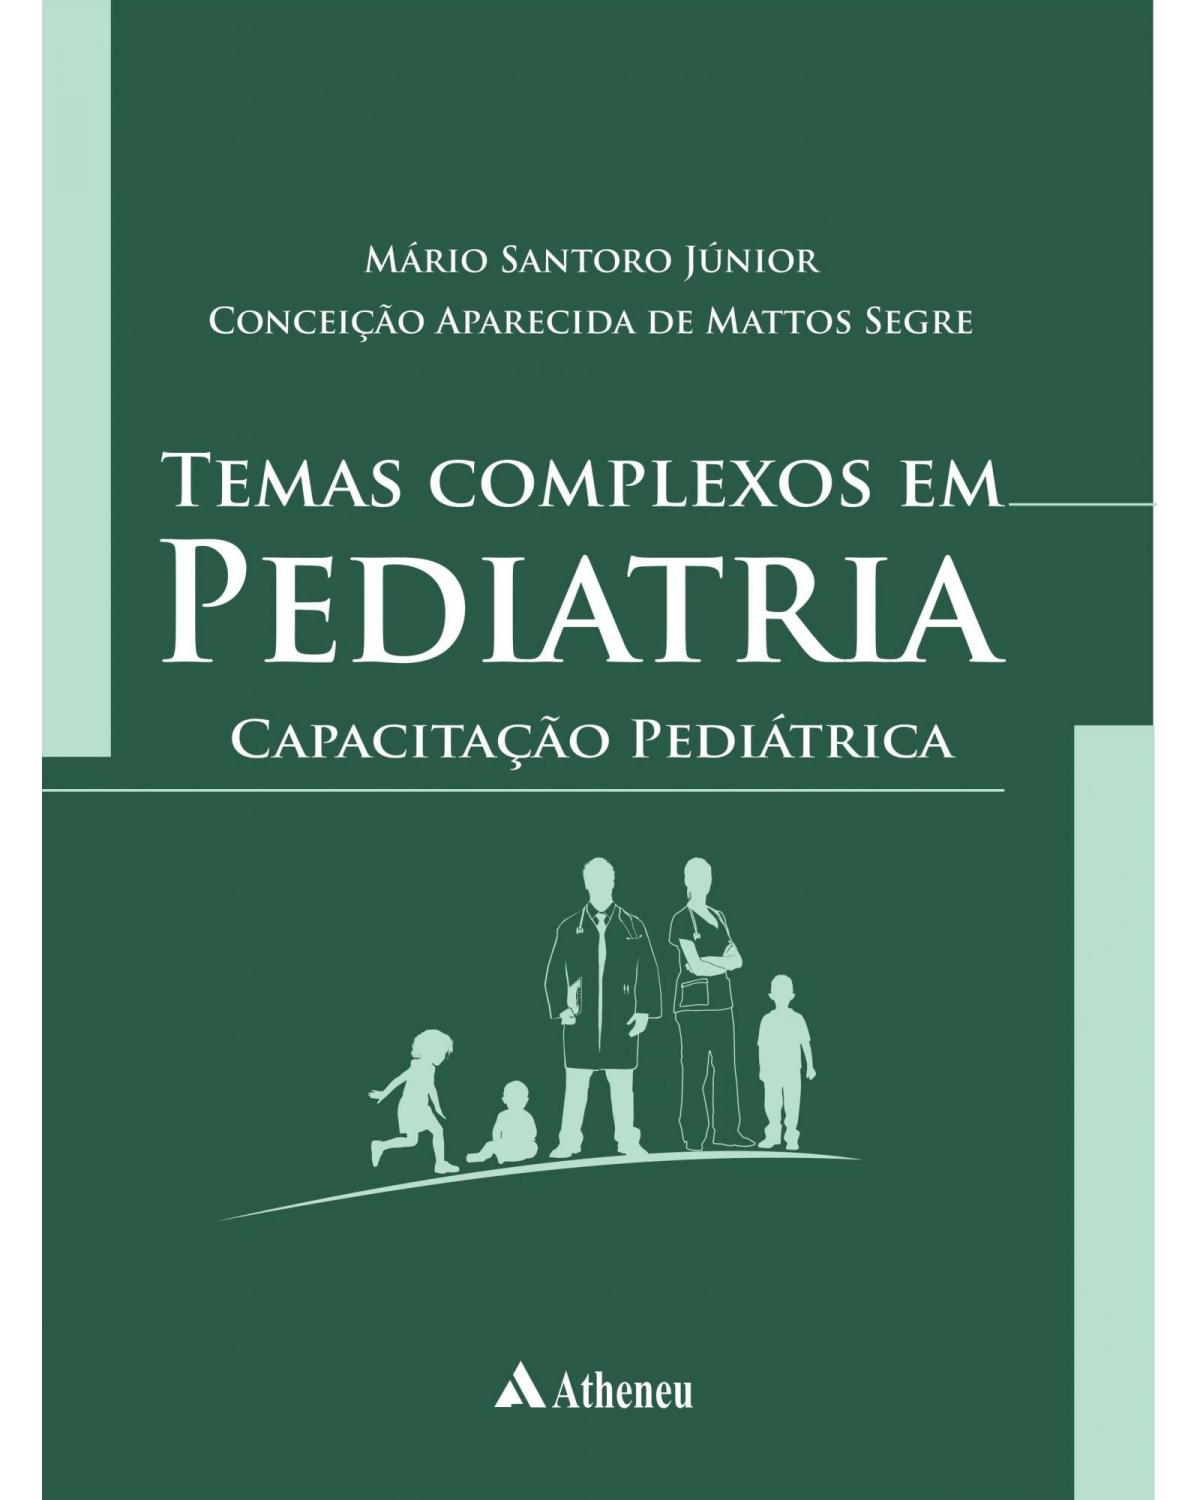 Temas complexos em pediatria - Capacitação pediátrica - 1ª Edição | 2015